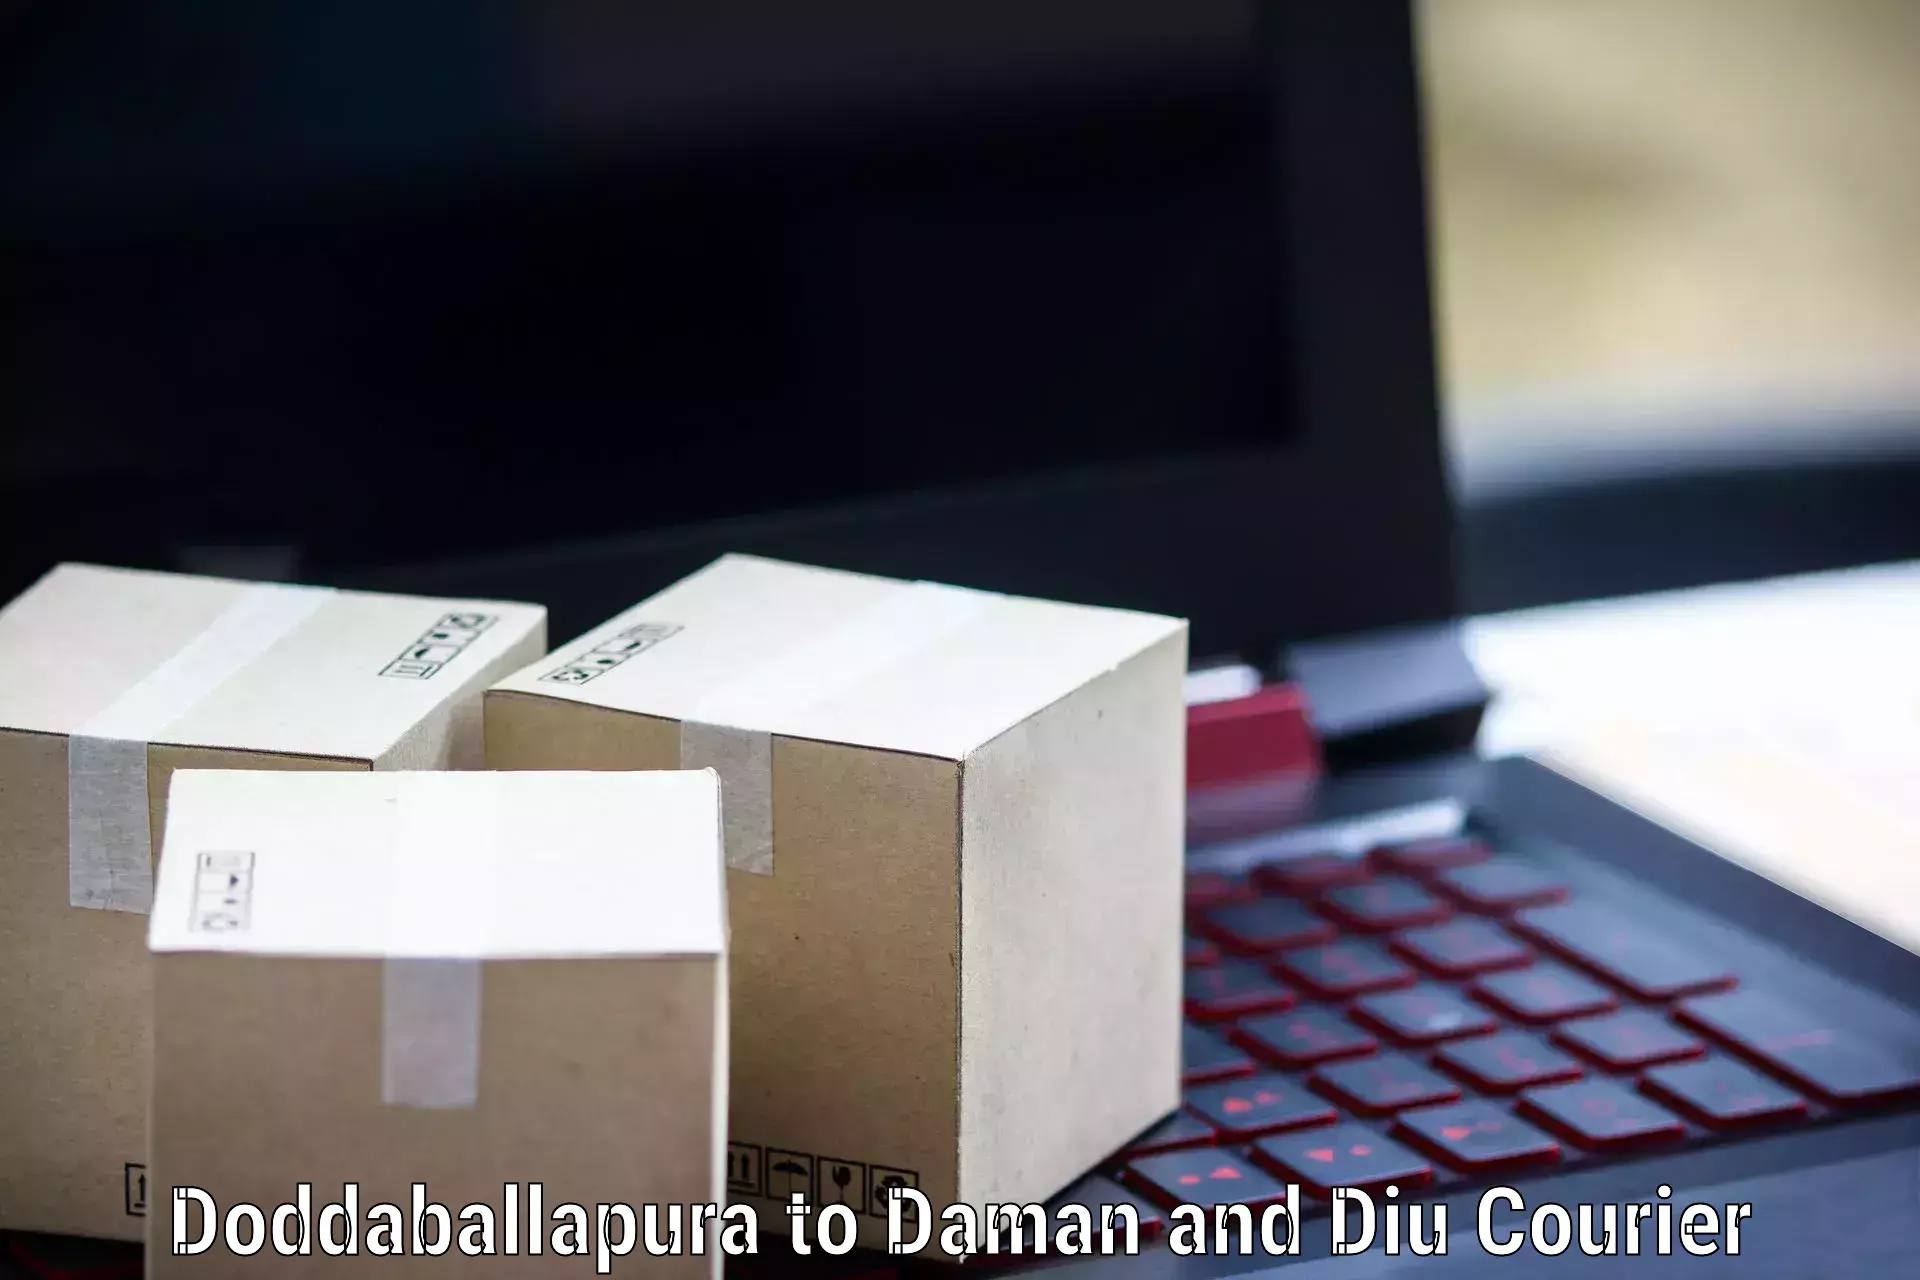 Advanced delivery network Doddaballapura to Diu